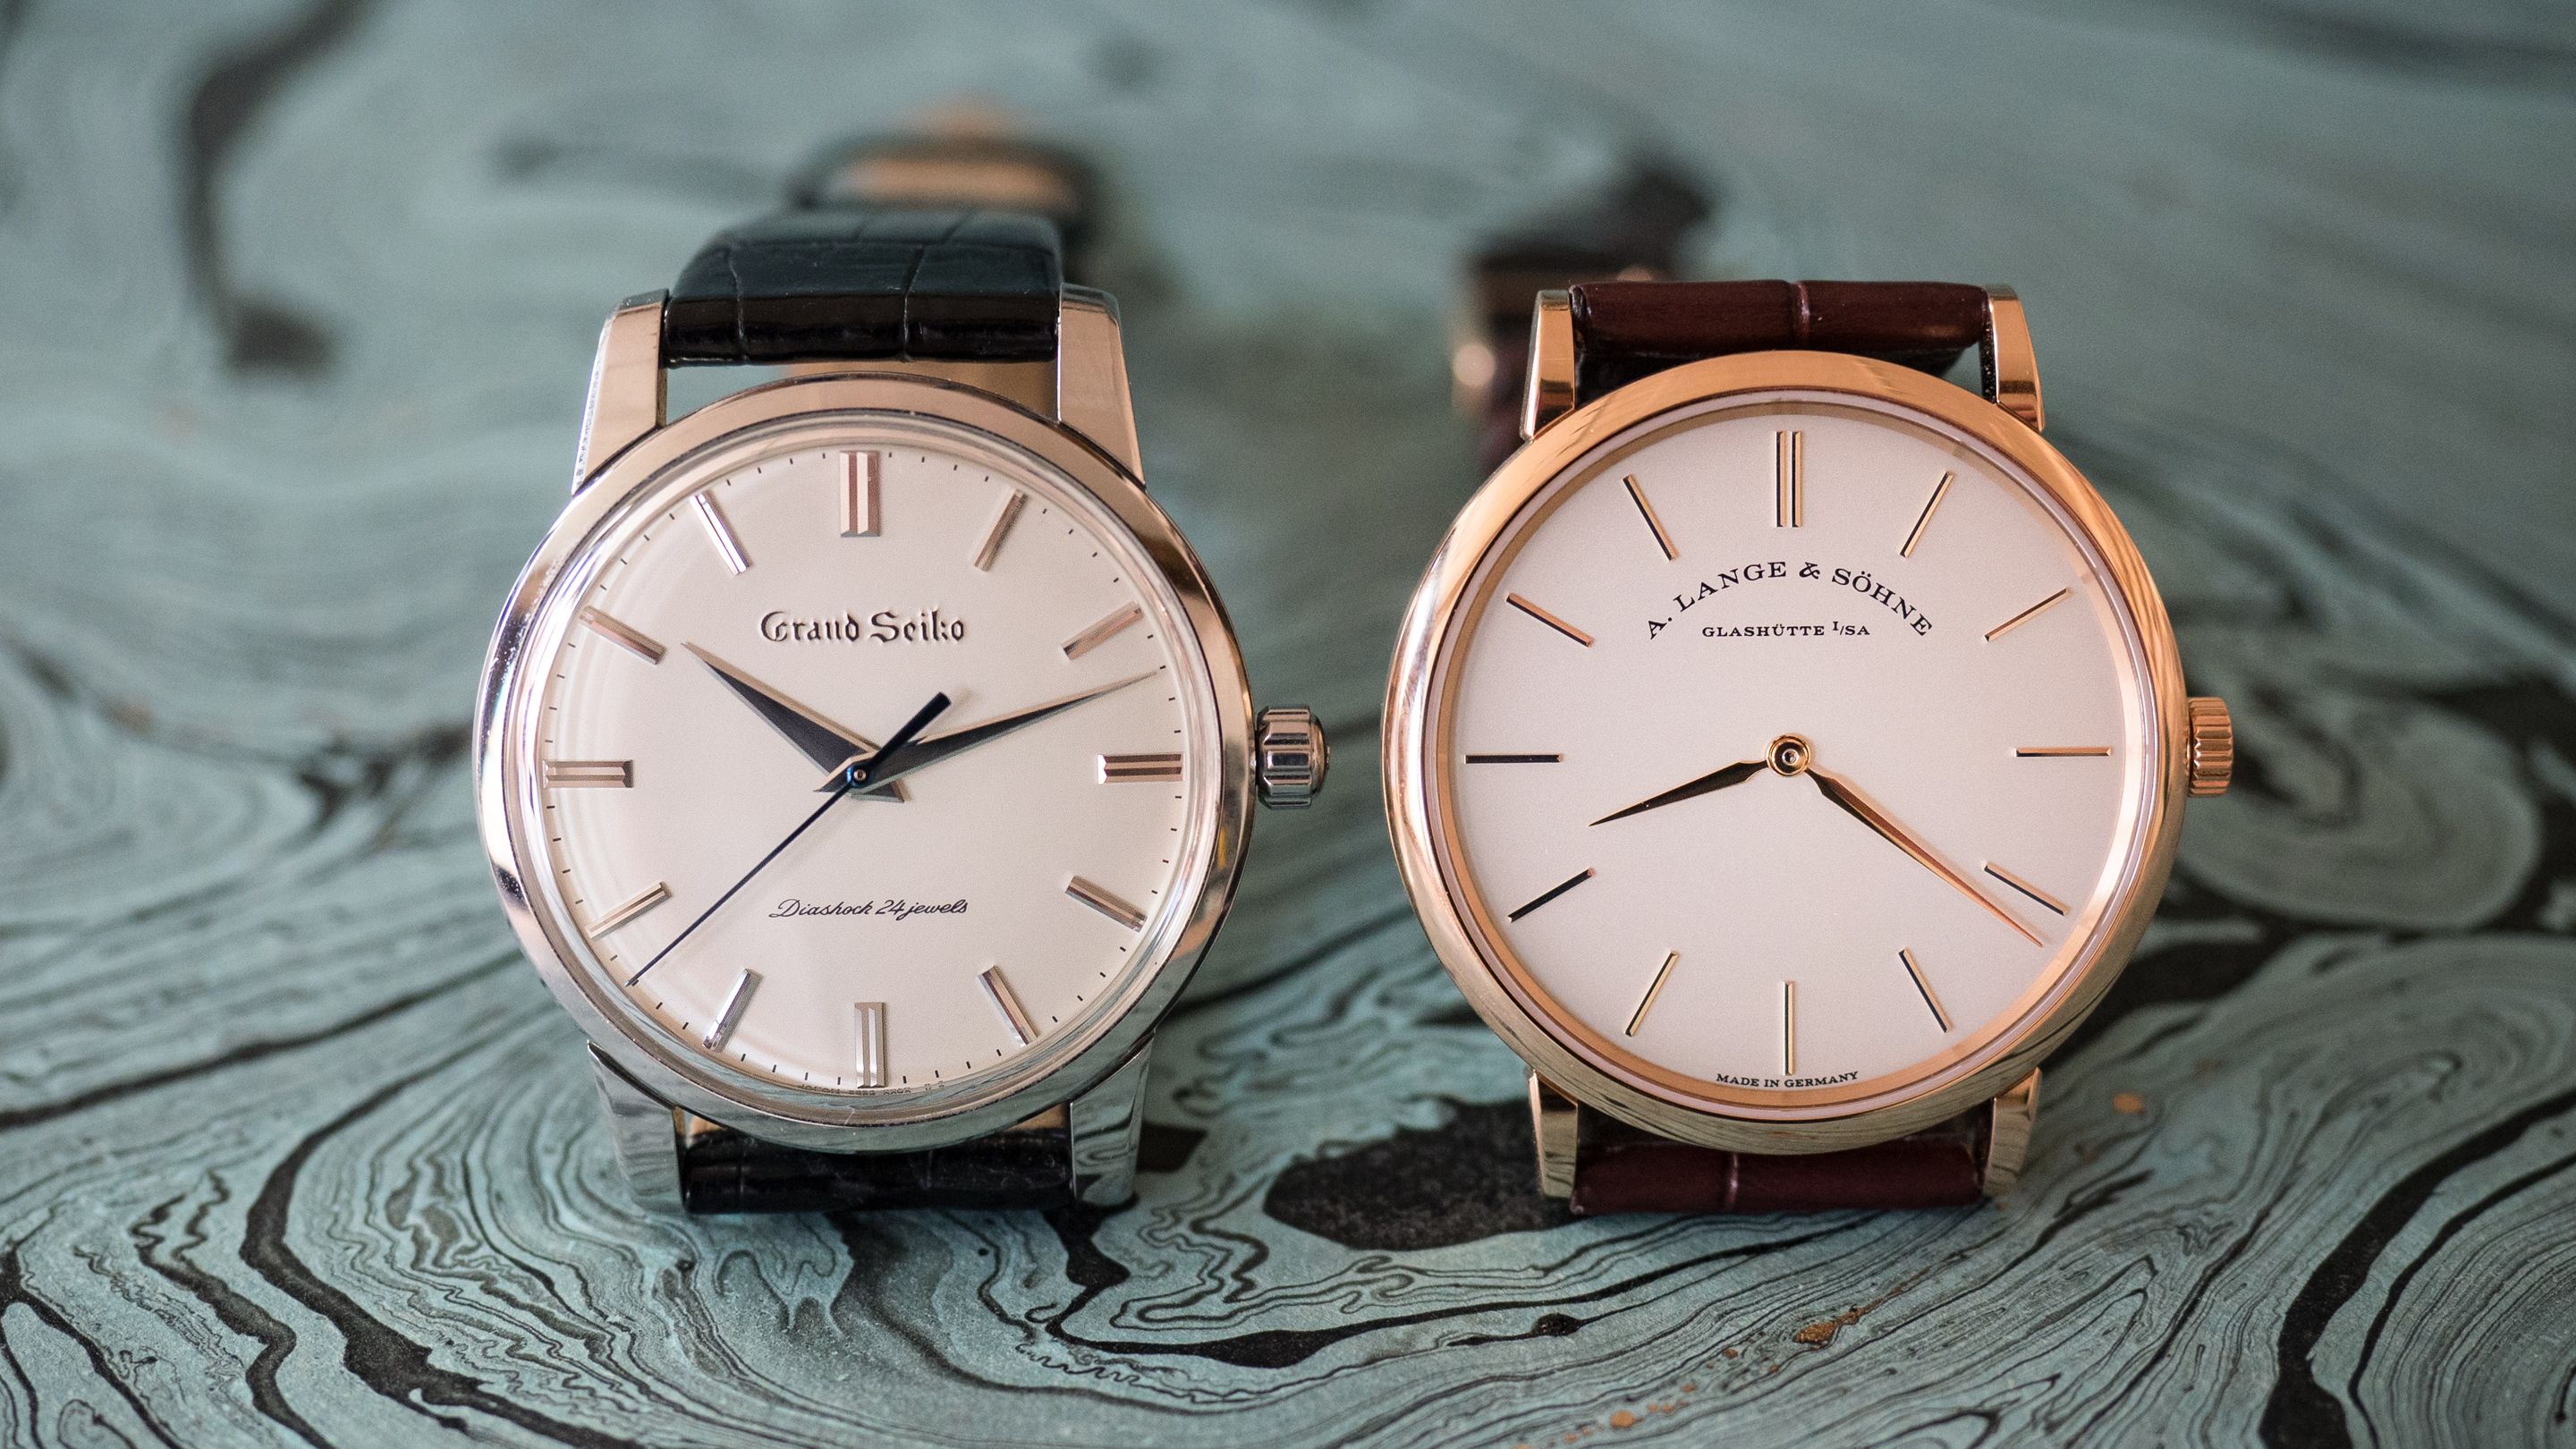 The Two Watch Collection: グランドセイコー SBGW033 セイコー創業130周年記念限定モデルとA.ランゲ＆ゾーネ  サクソニア・フラッハ37mmを2本限りのコレクションに選ぶ - Hodinkee Japan （ホディンキー 日本版）